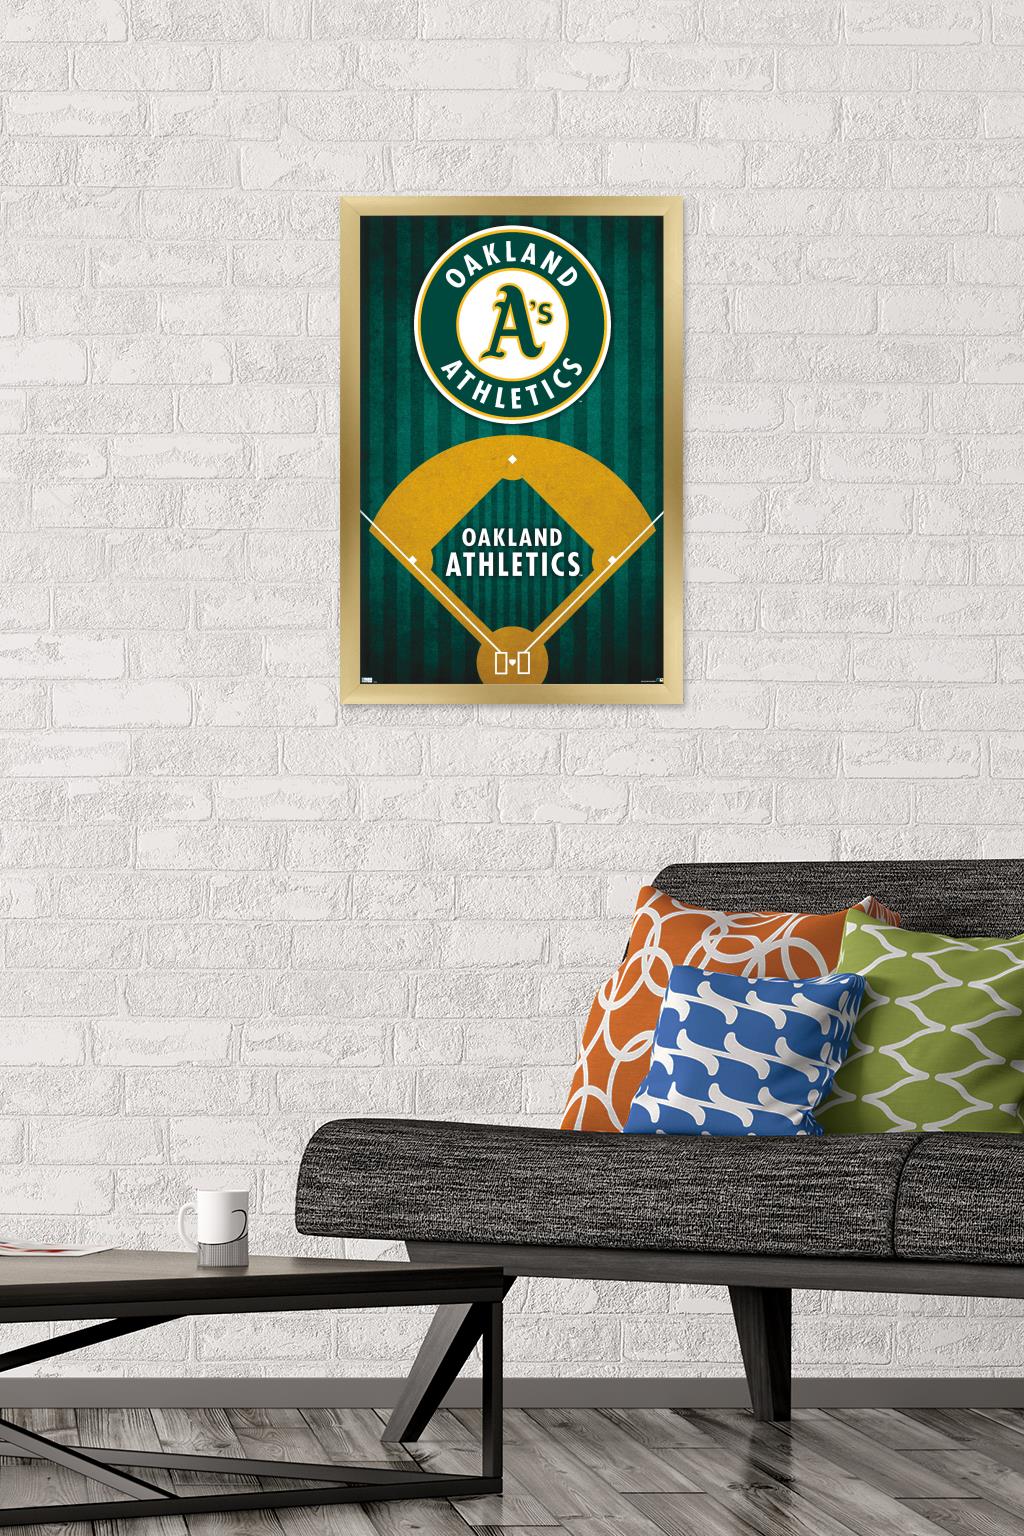 MLB Oakland Athletics - Logo 20 Wall Poster, 14.725" x 22.375", Framed - image 2 of 5